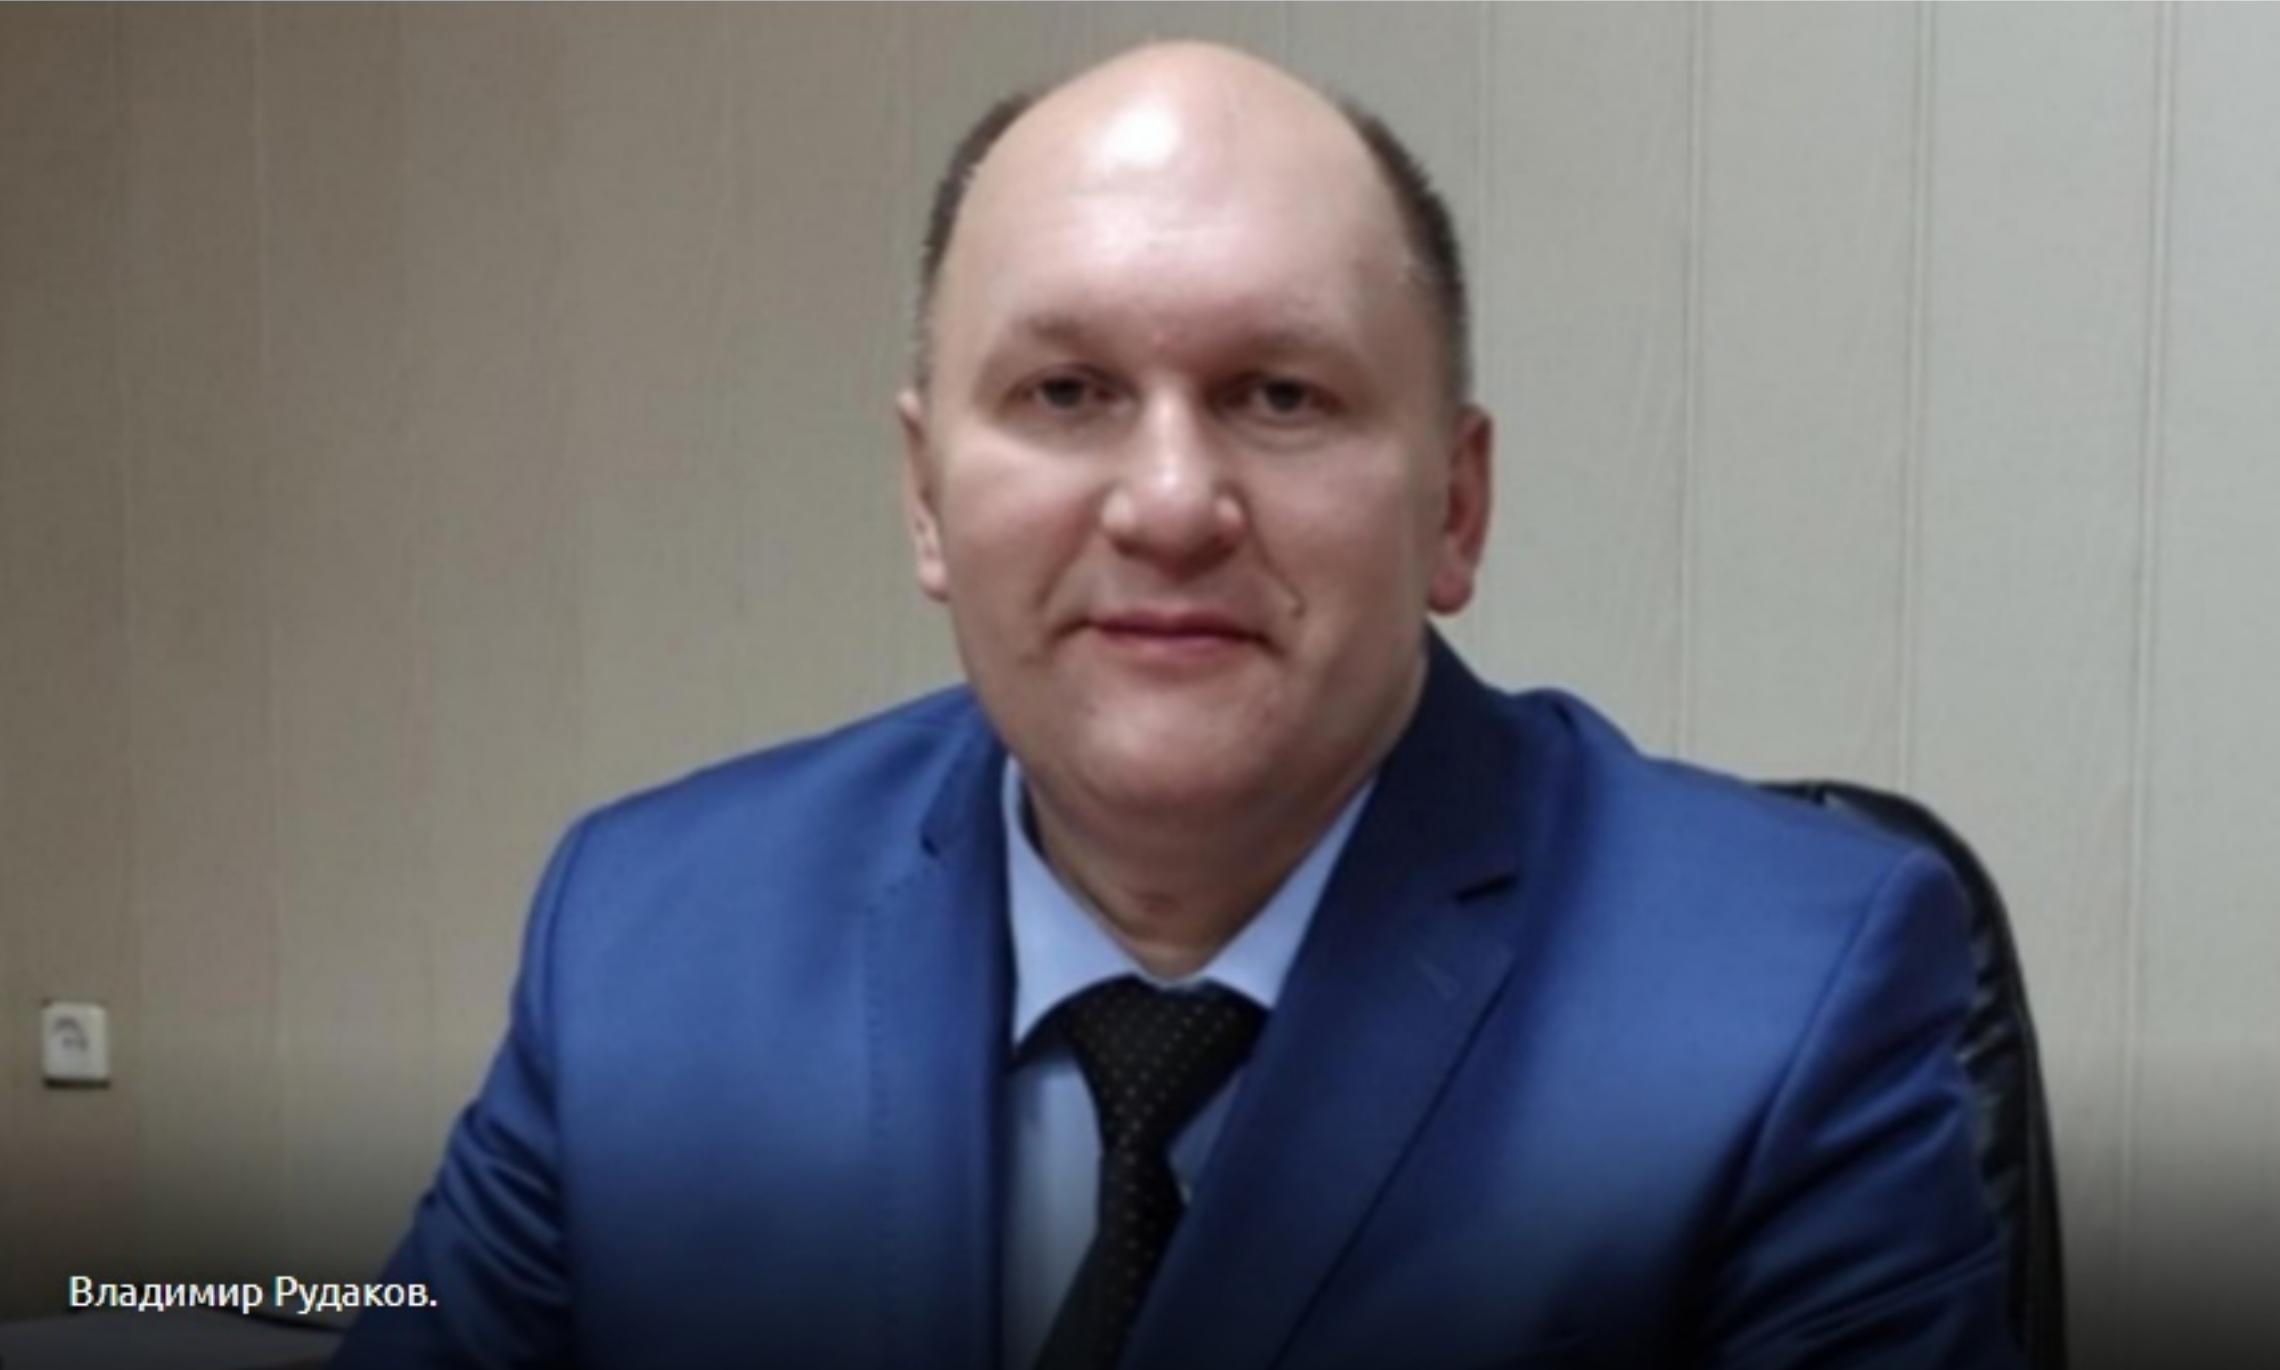 Бывший глава Красноборского района Владимир Рудаков получил условный срок за коррупцию